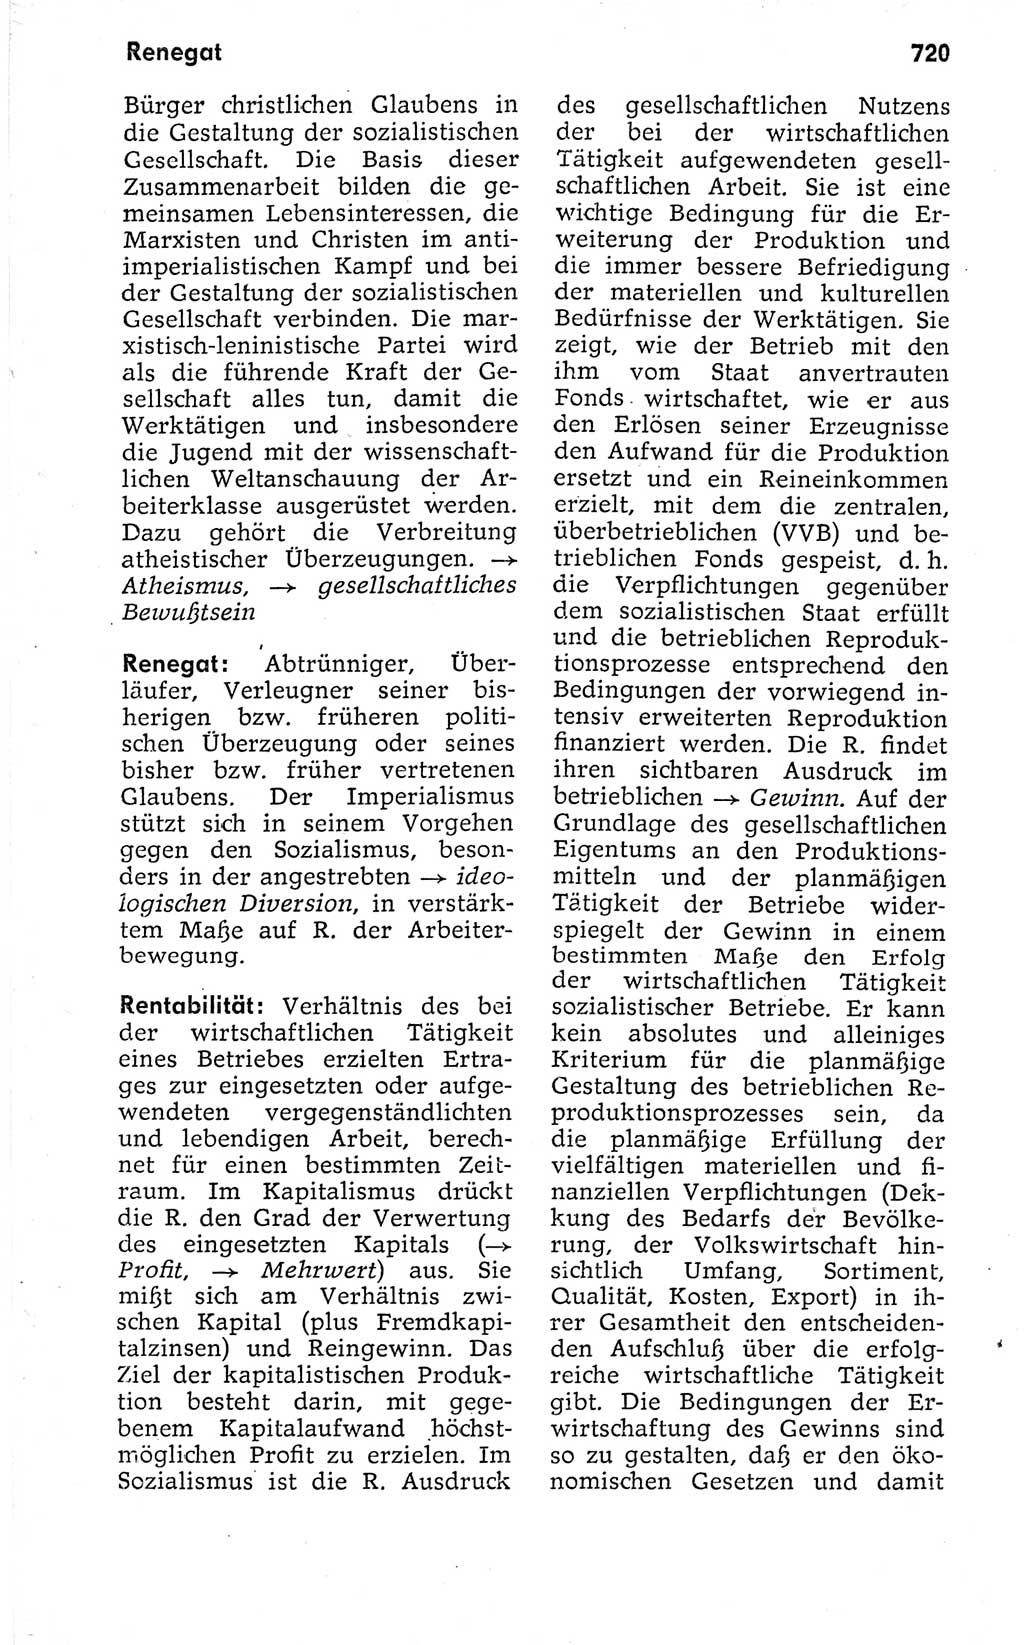 Kleines politisches Wörterbuch [Deutsche Demokratische Republik (DDR)] 1973, Seite 720 (Kl. pol. Wb. DDR 1973, S. 720)